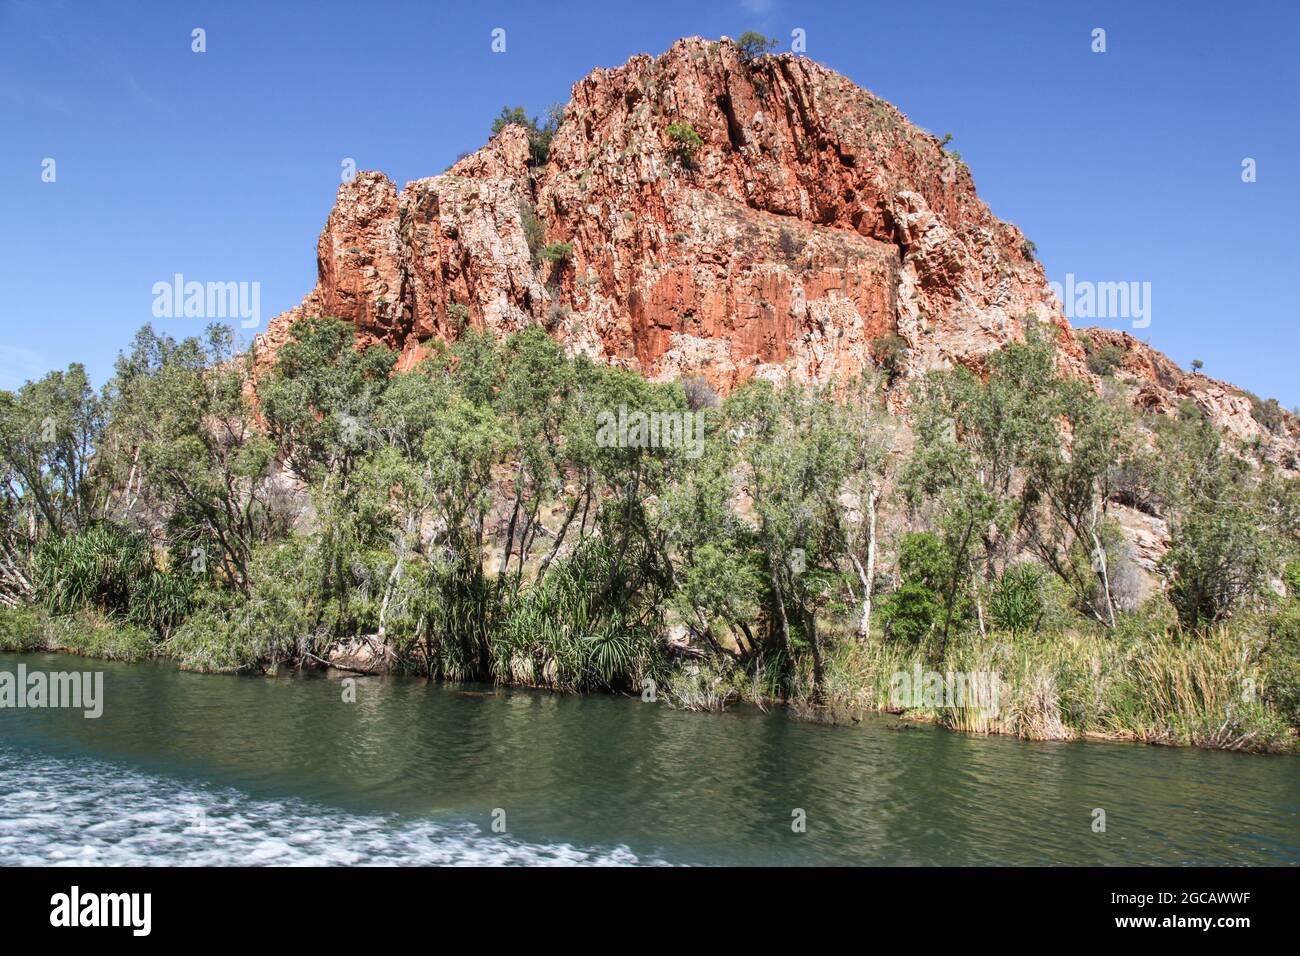 Affioramento roccioso rosso sul fiume Ord Australia Occidentale. Le crociere fluviali sul fiume sono un'attività turistica popolare Foto Stock